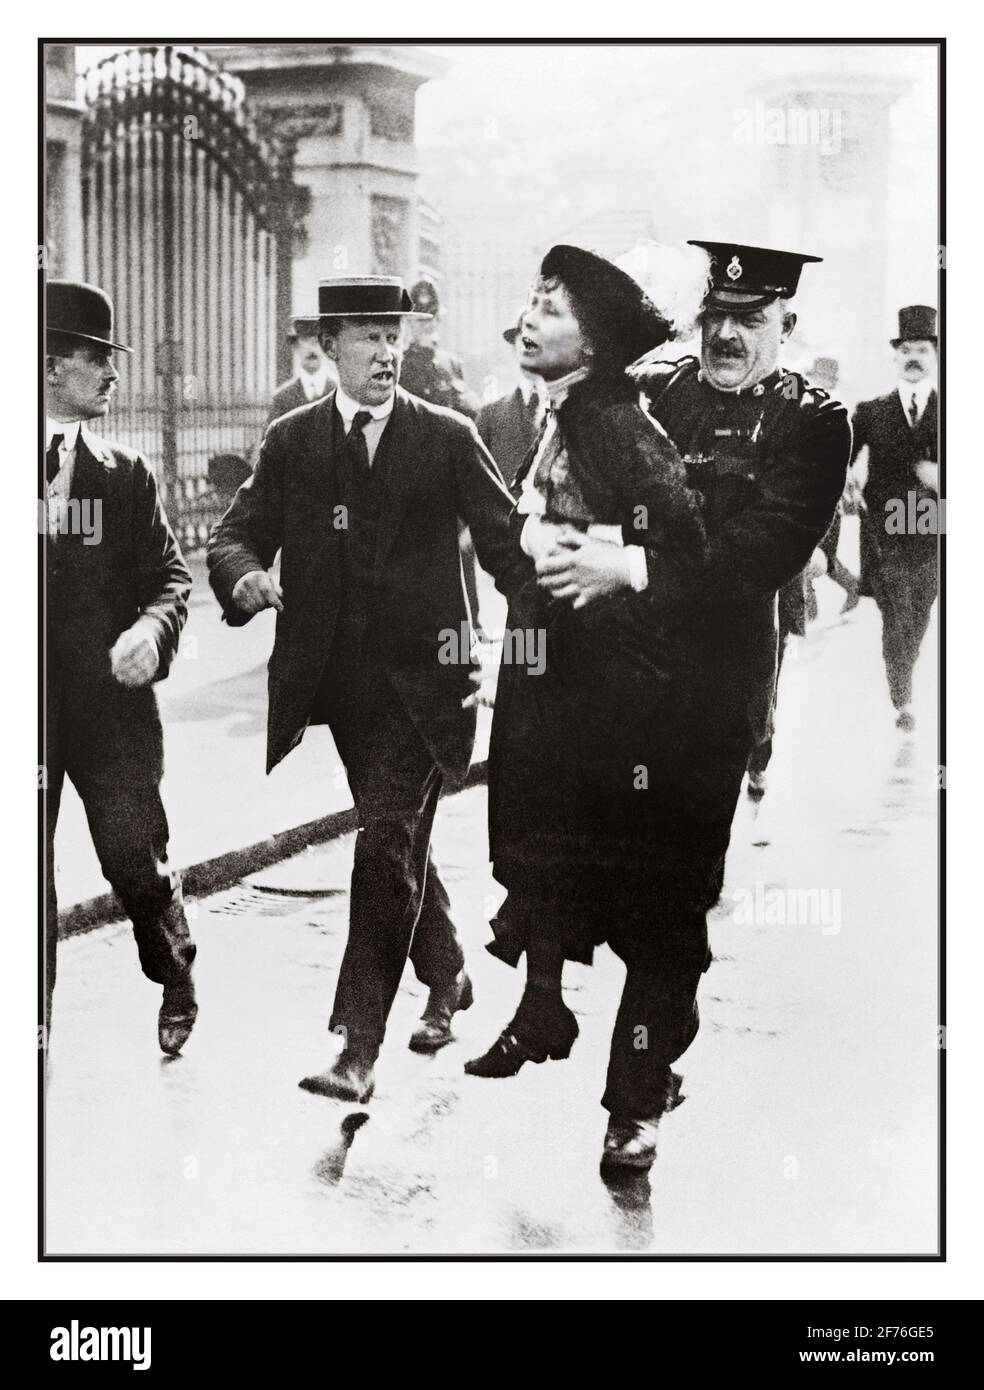 Frau Emmeline Pankhurst, Leiterin der Suffragette-Frauenbewegung, wird vor dem Buckingham Palace verhaftet, als sie im Mai 1914 versuchte, König George V eine Petition vorzulegen. Stockfoto